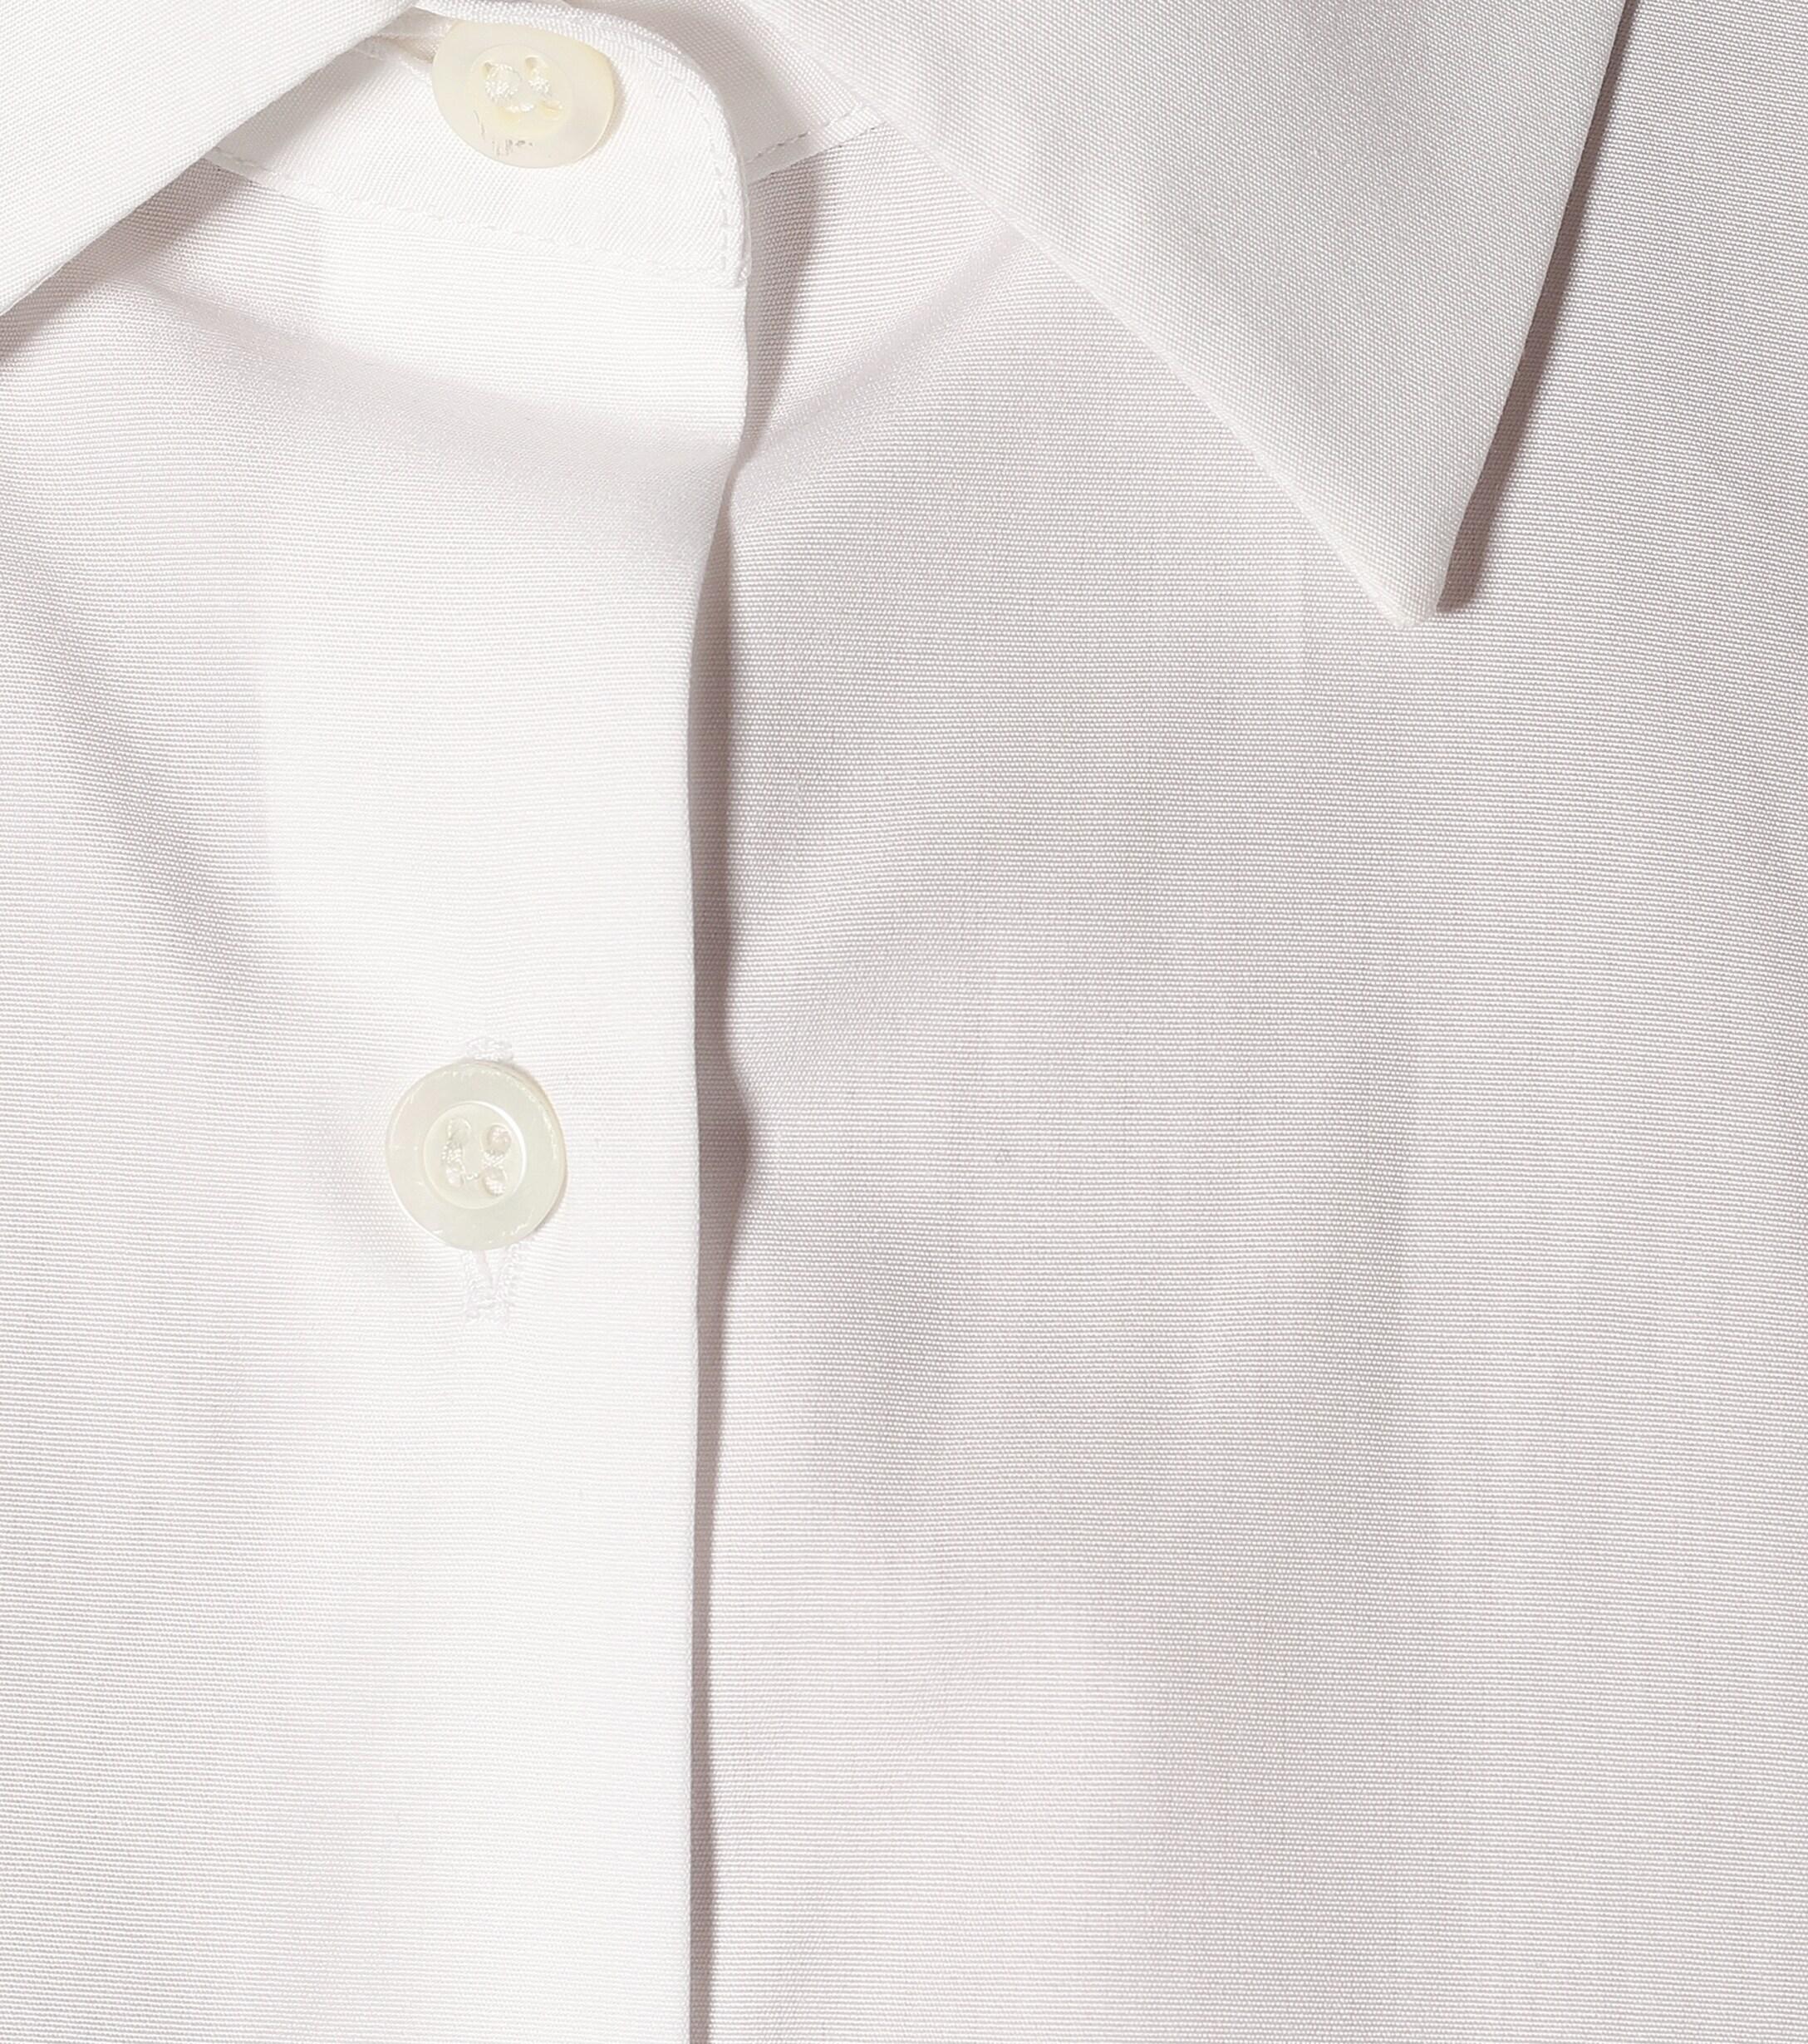 Dries Van Noten Cotton Poplin Shirt in White - Lyst